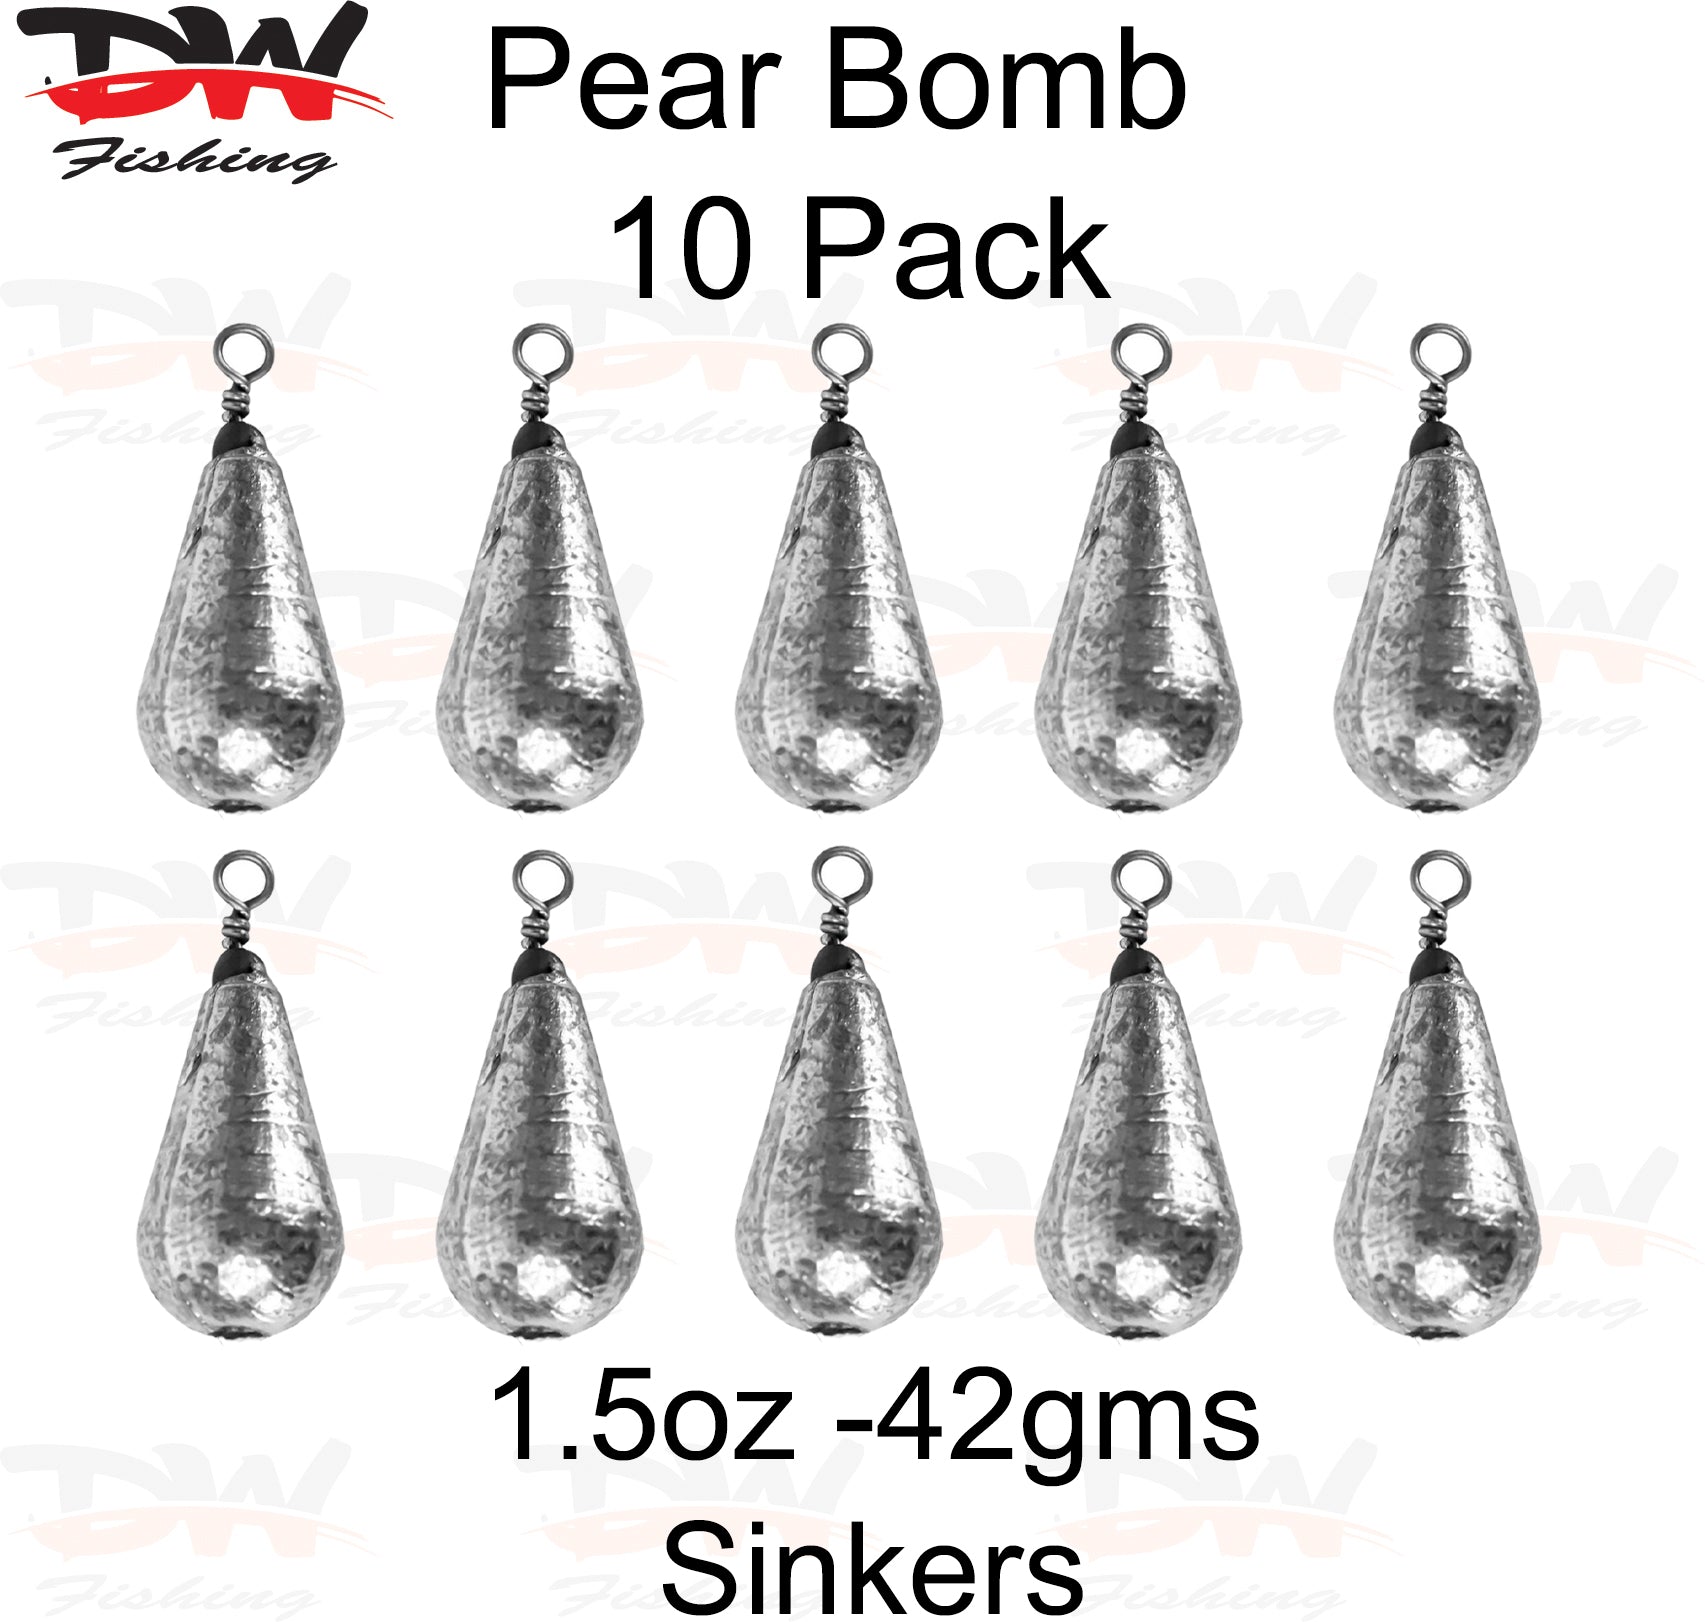 Pear bomb reef sinker 1 1/2oz-42gms 10 pack